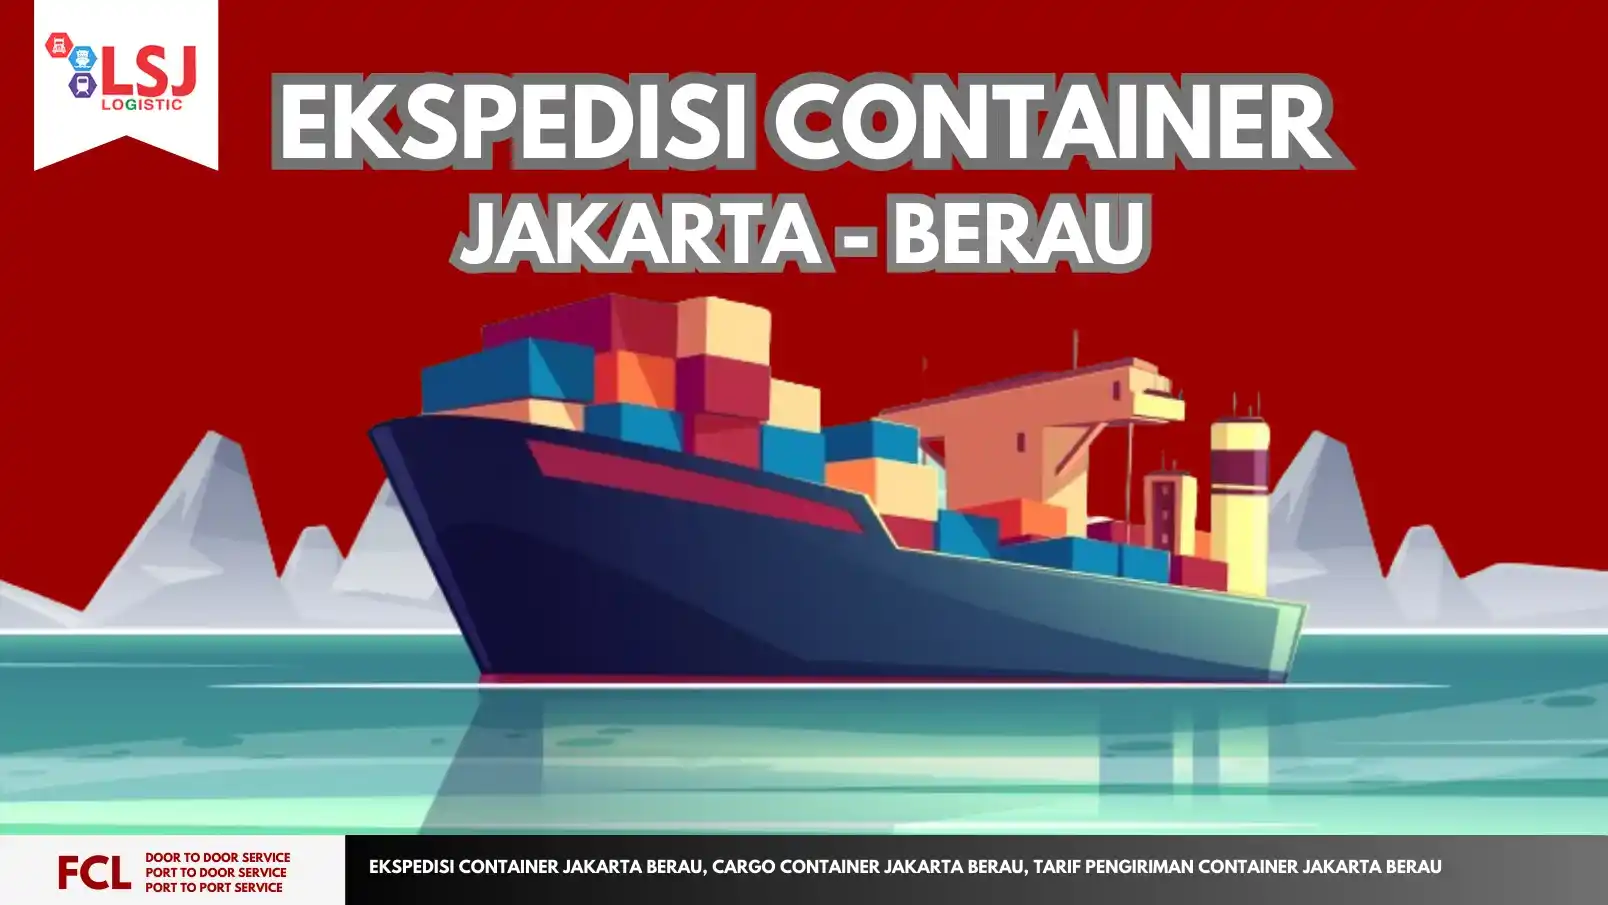 Tarif Pengiriman Container Jakarta Berau